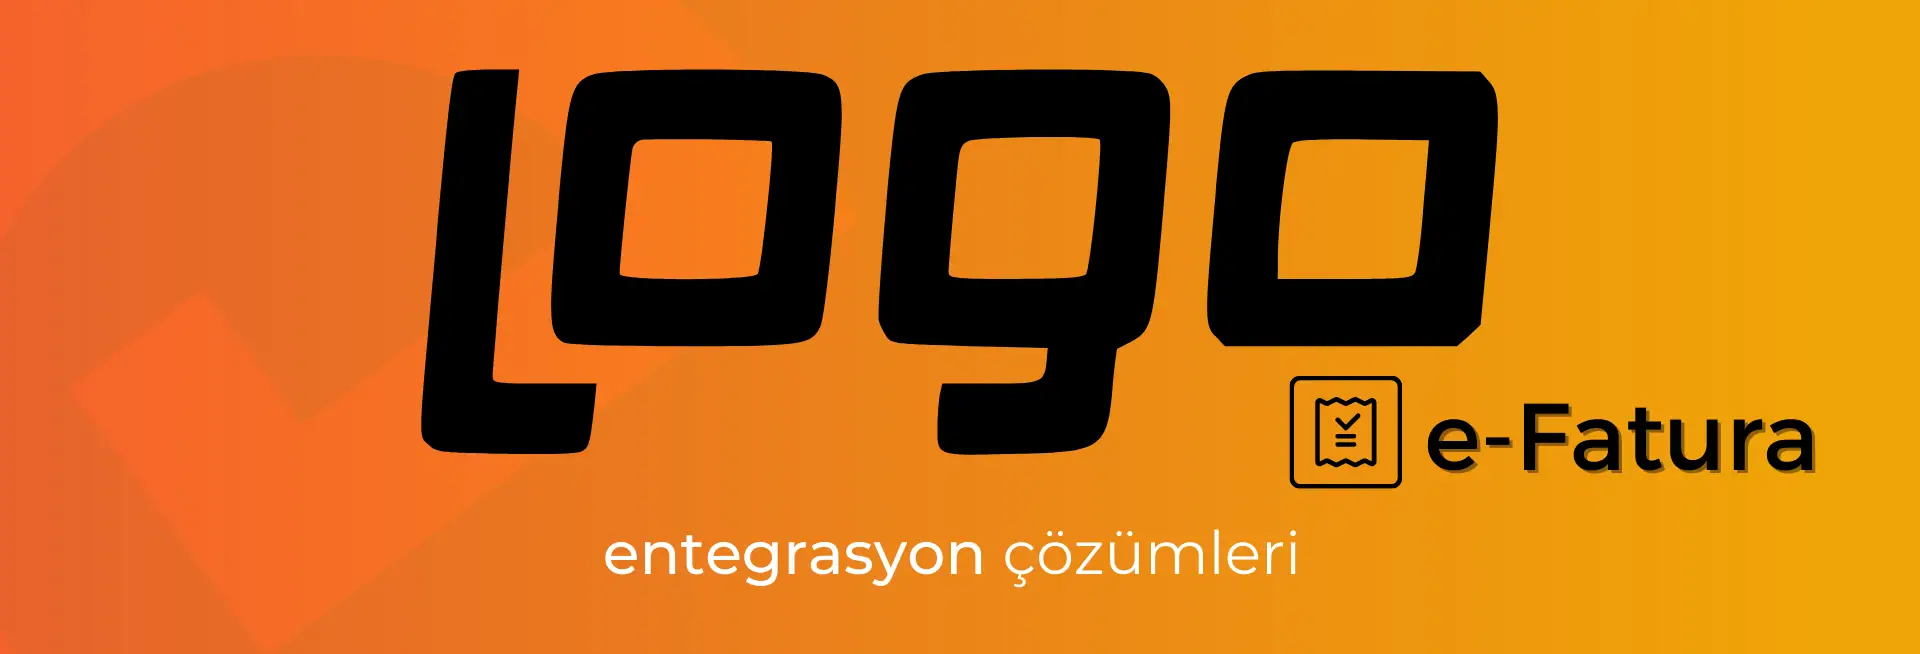 logo e-fatura entegrasyonu